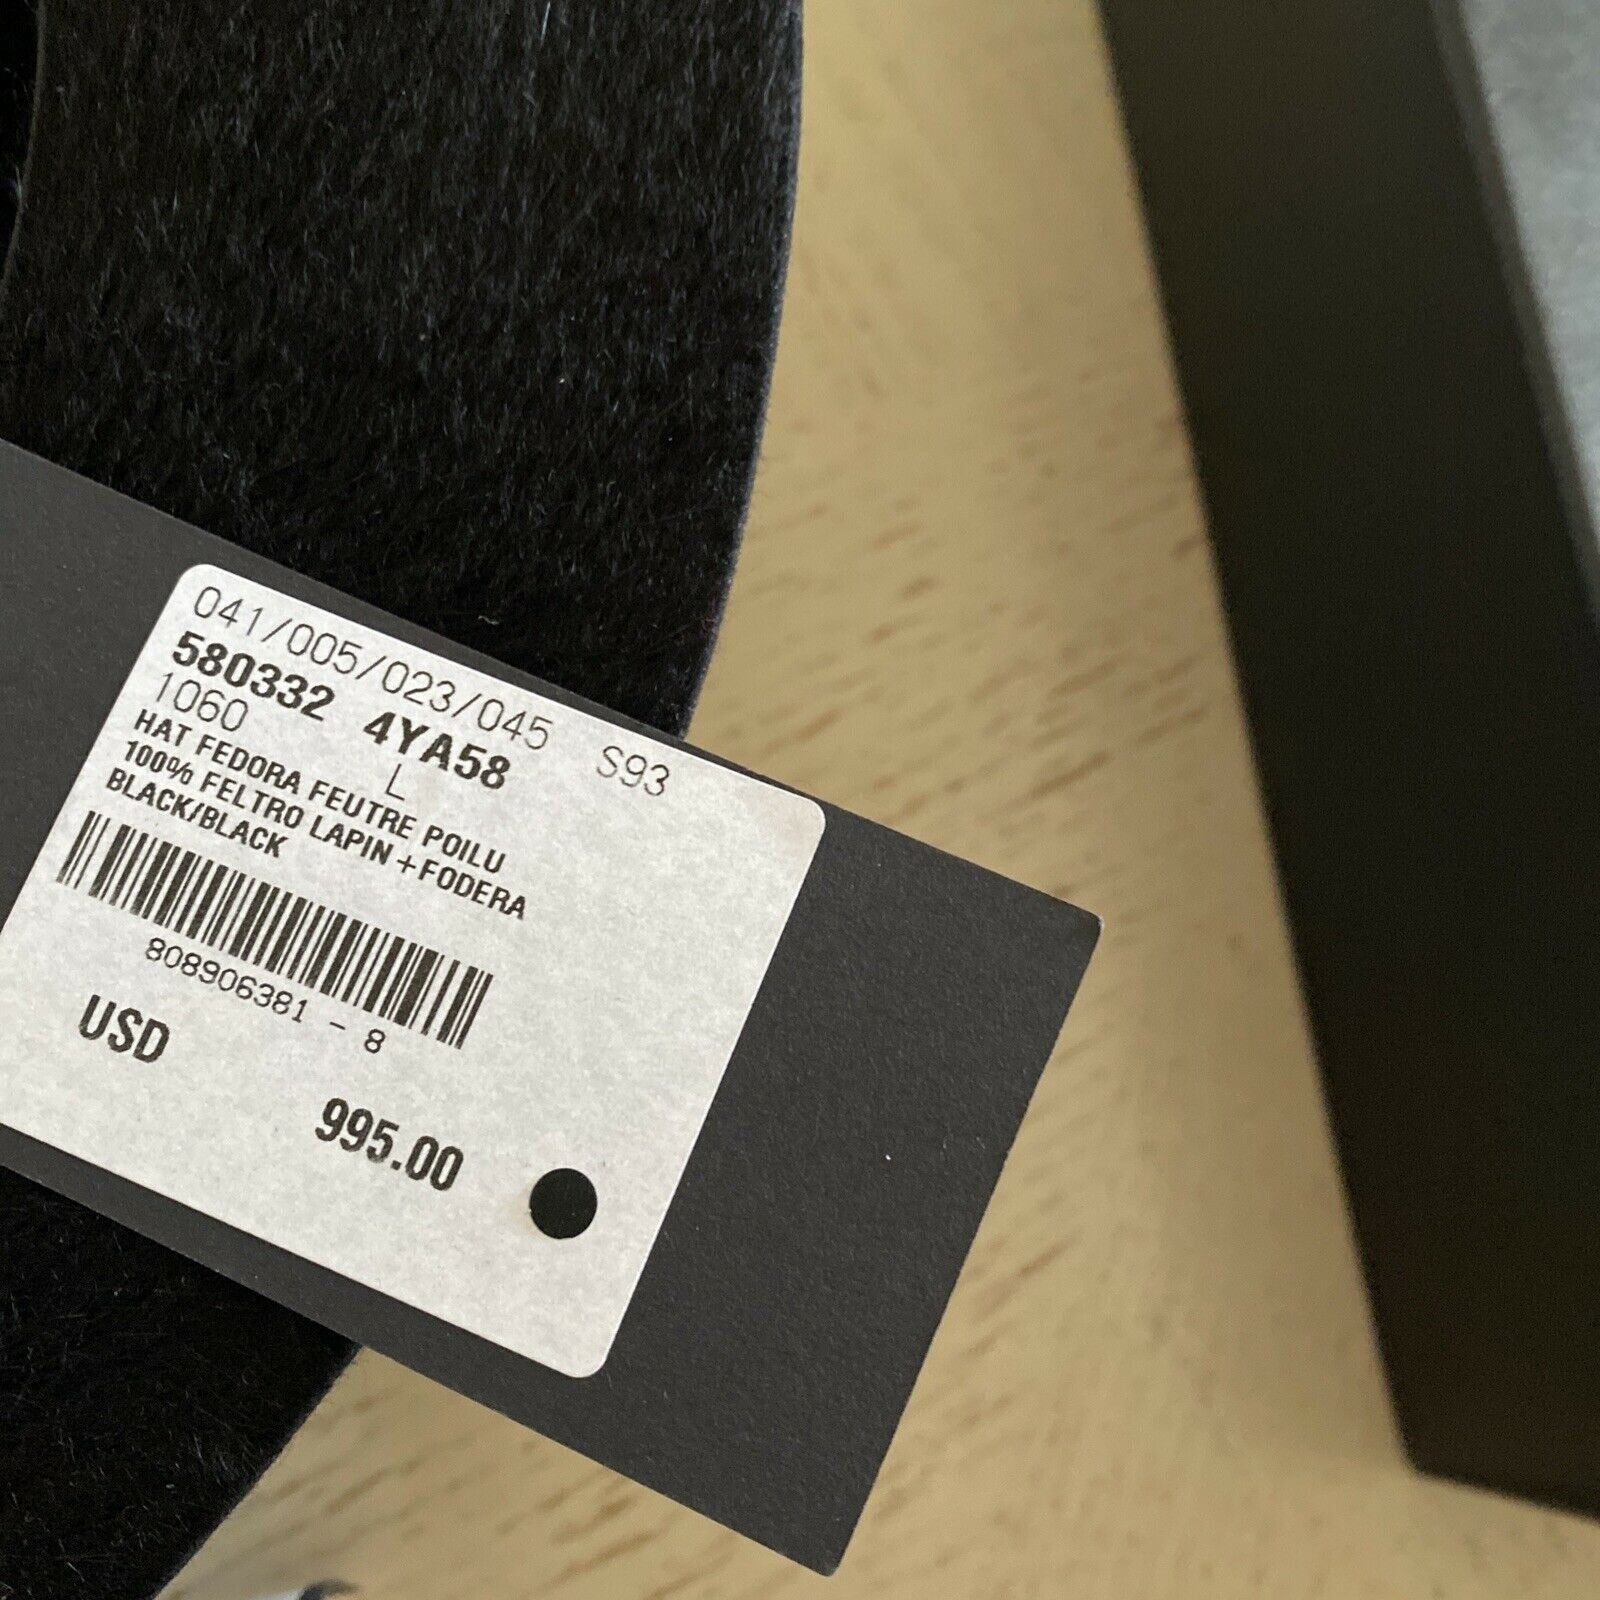 Neu mit Etikett: 995 $ Saint Laurent Herren-Fedora-Hut aus zotteligem Filz, Schwarz, Größe L, Italien